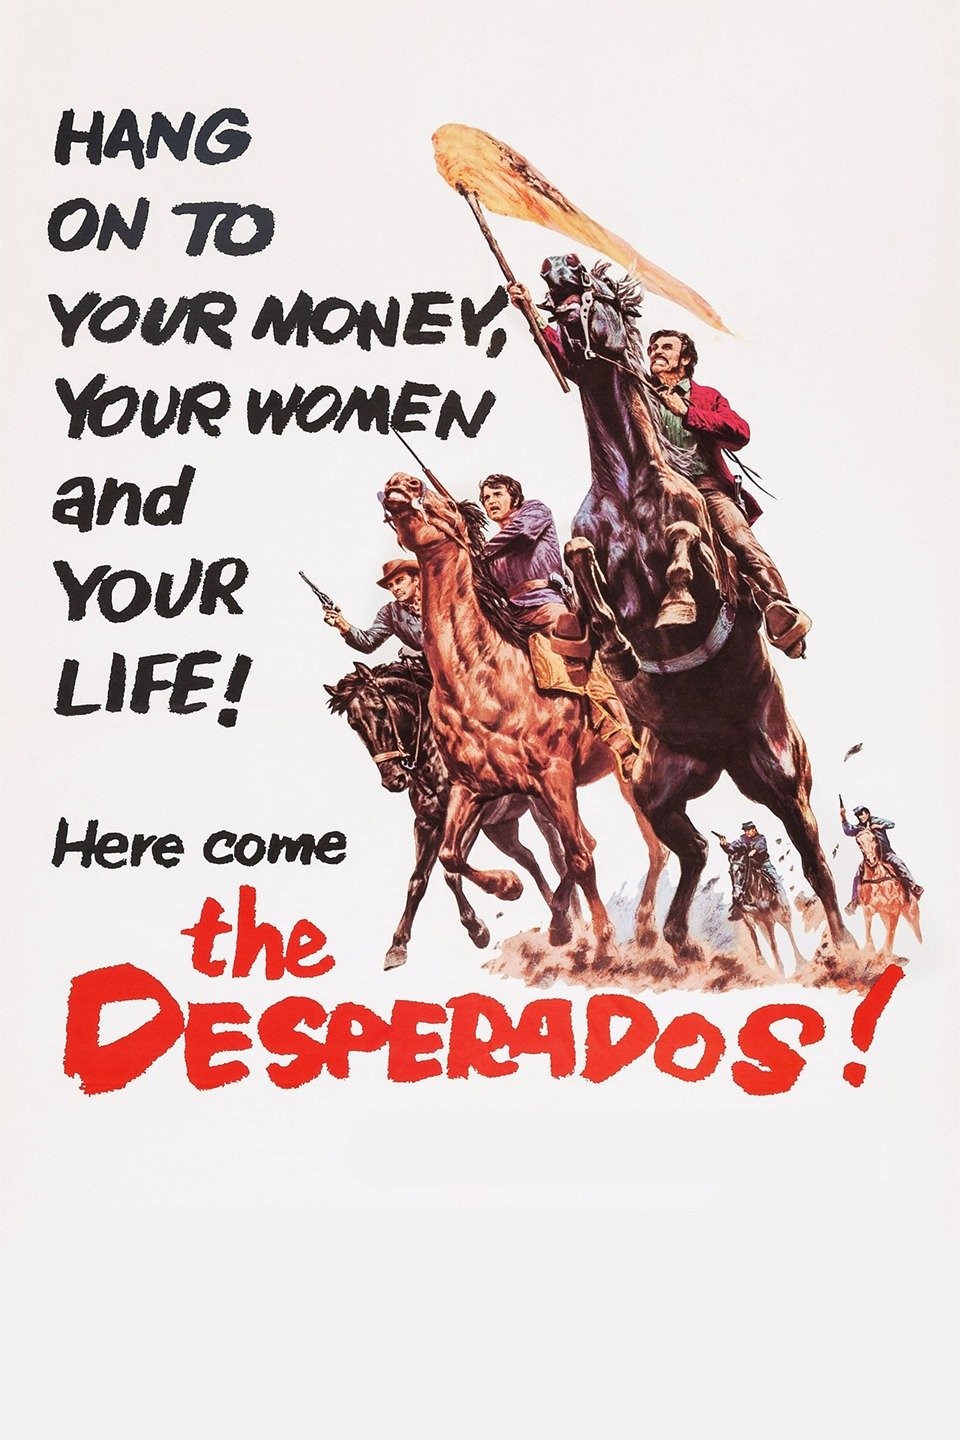 Desperados, Where to Stream and Watch